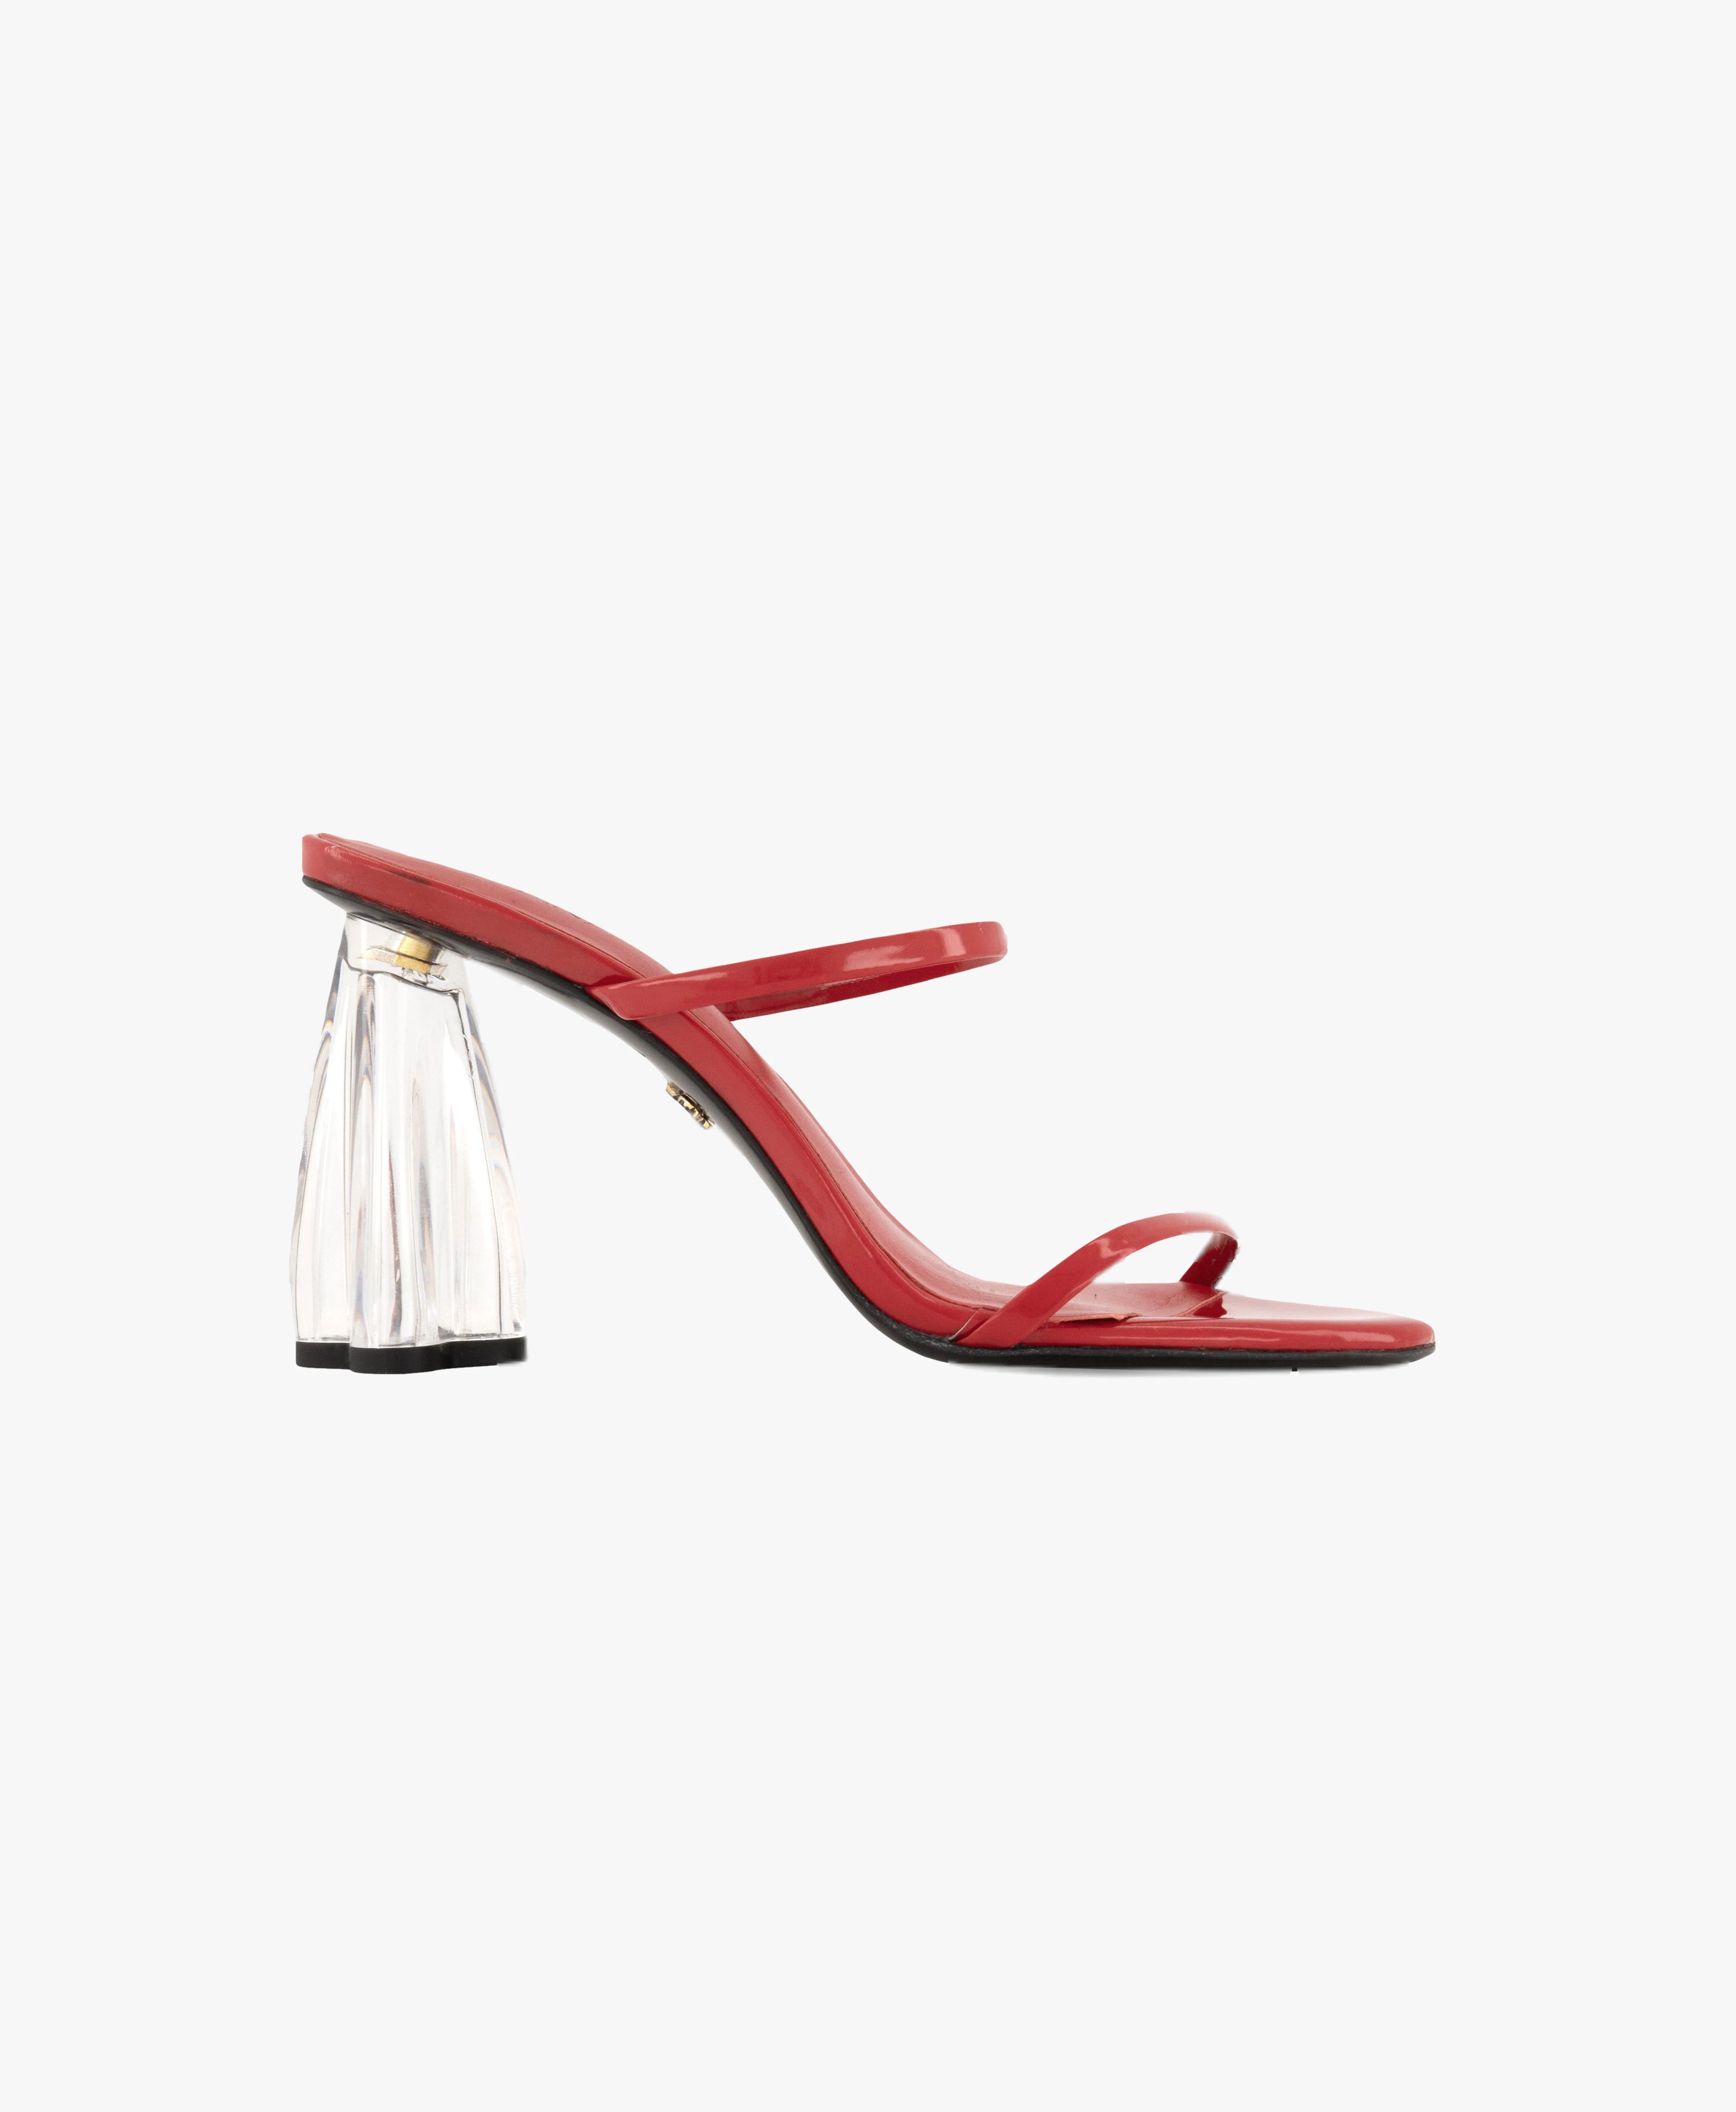 Fiorellini Glass Heel 95 Red Patent | Seezona